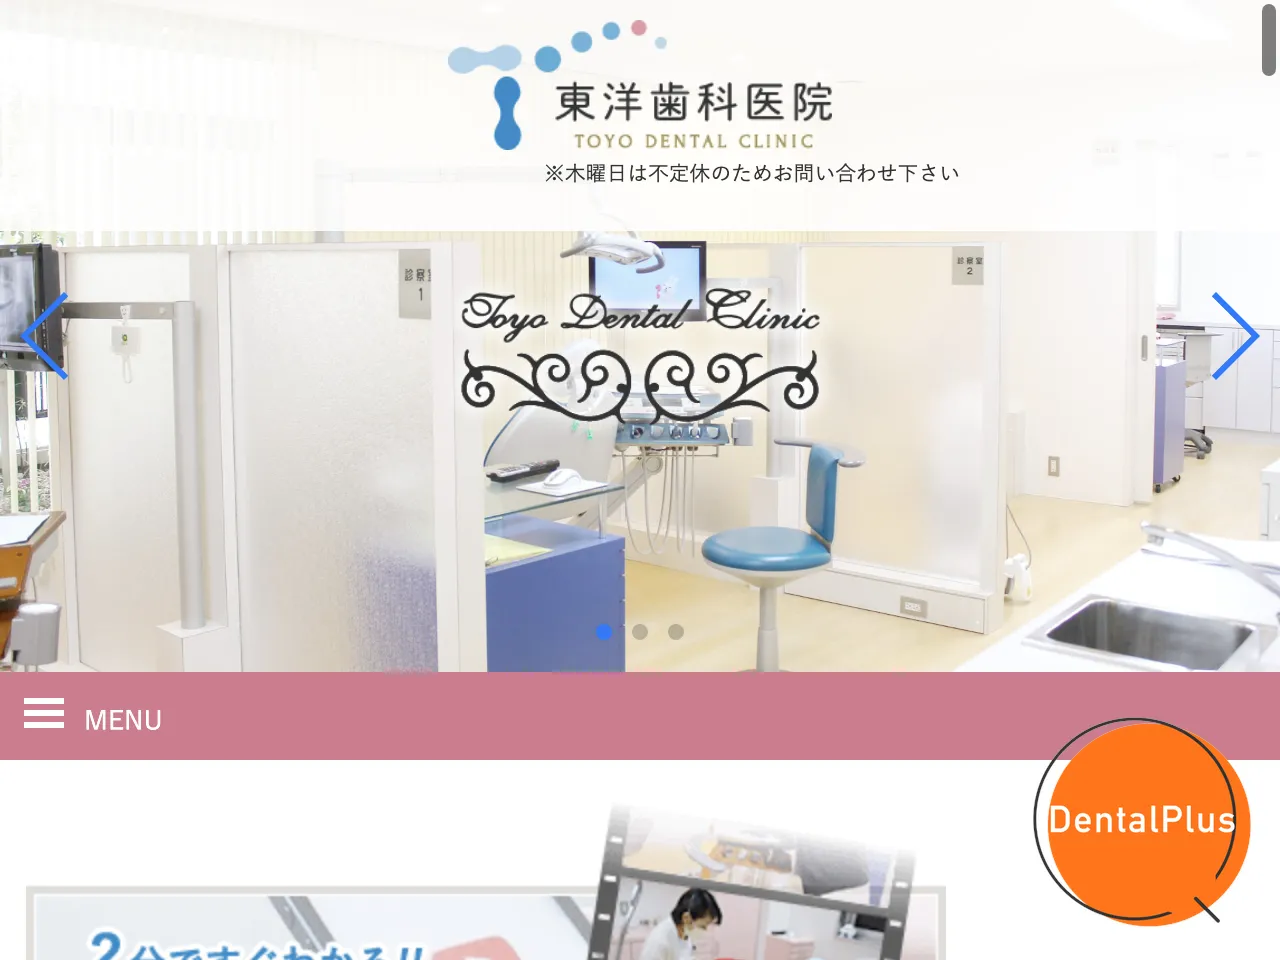 東洋歯科医院のウェブサイト